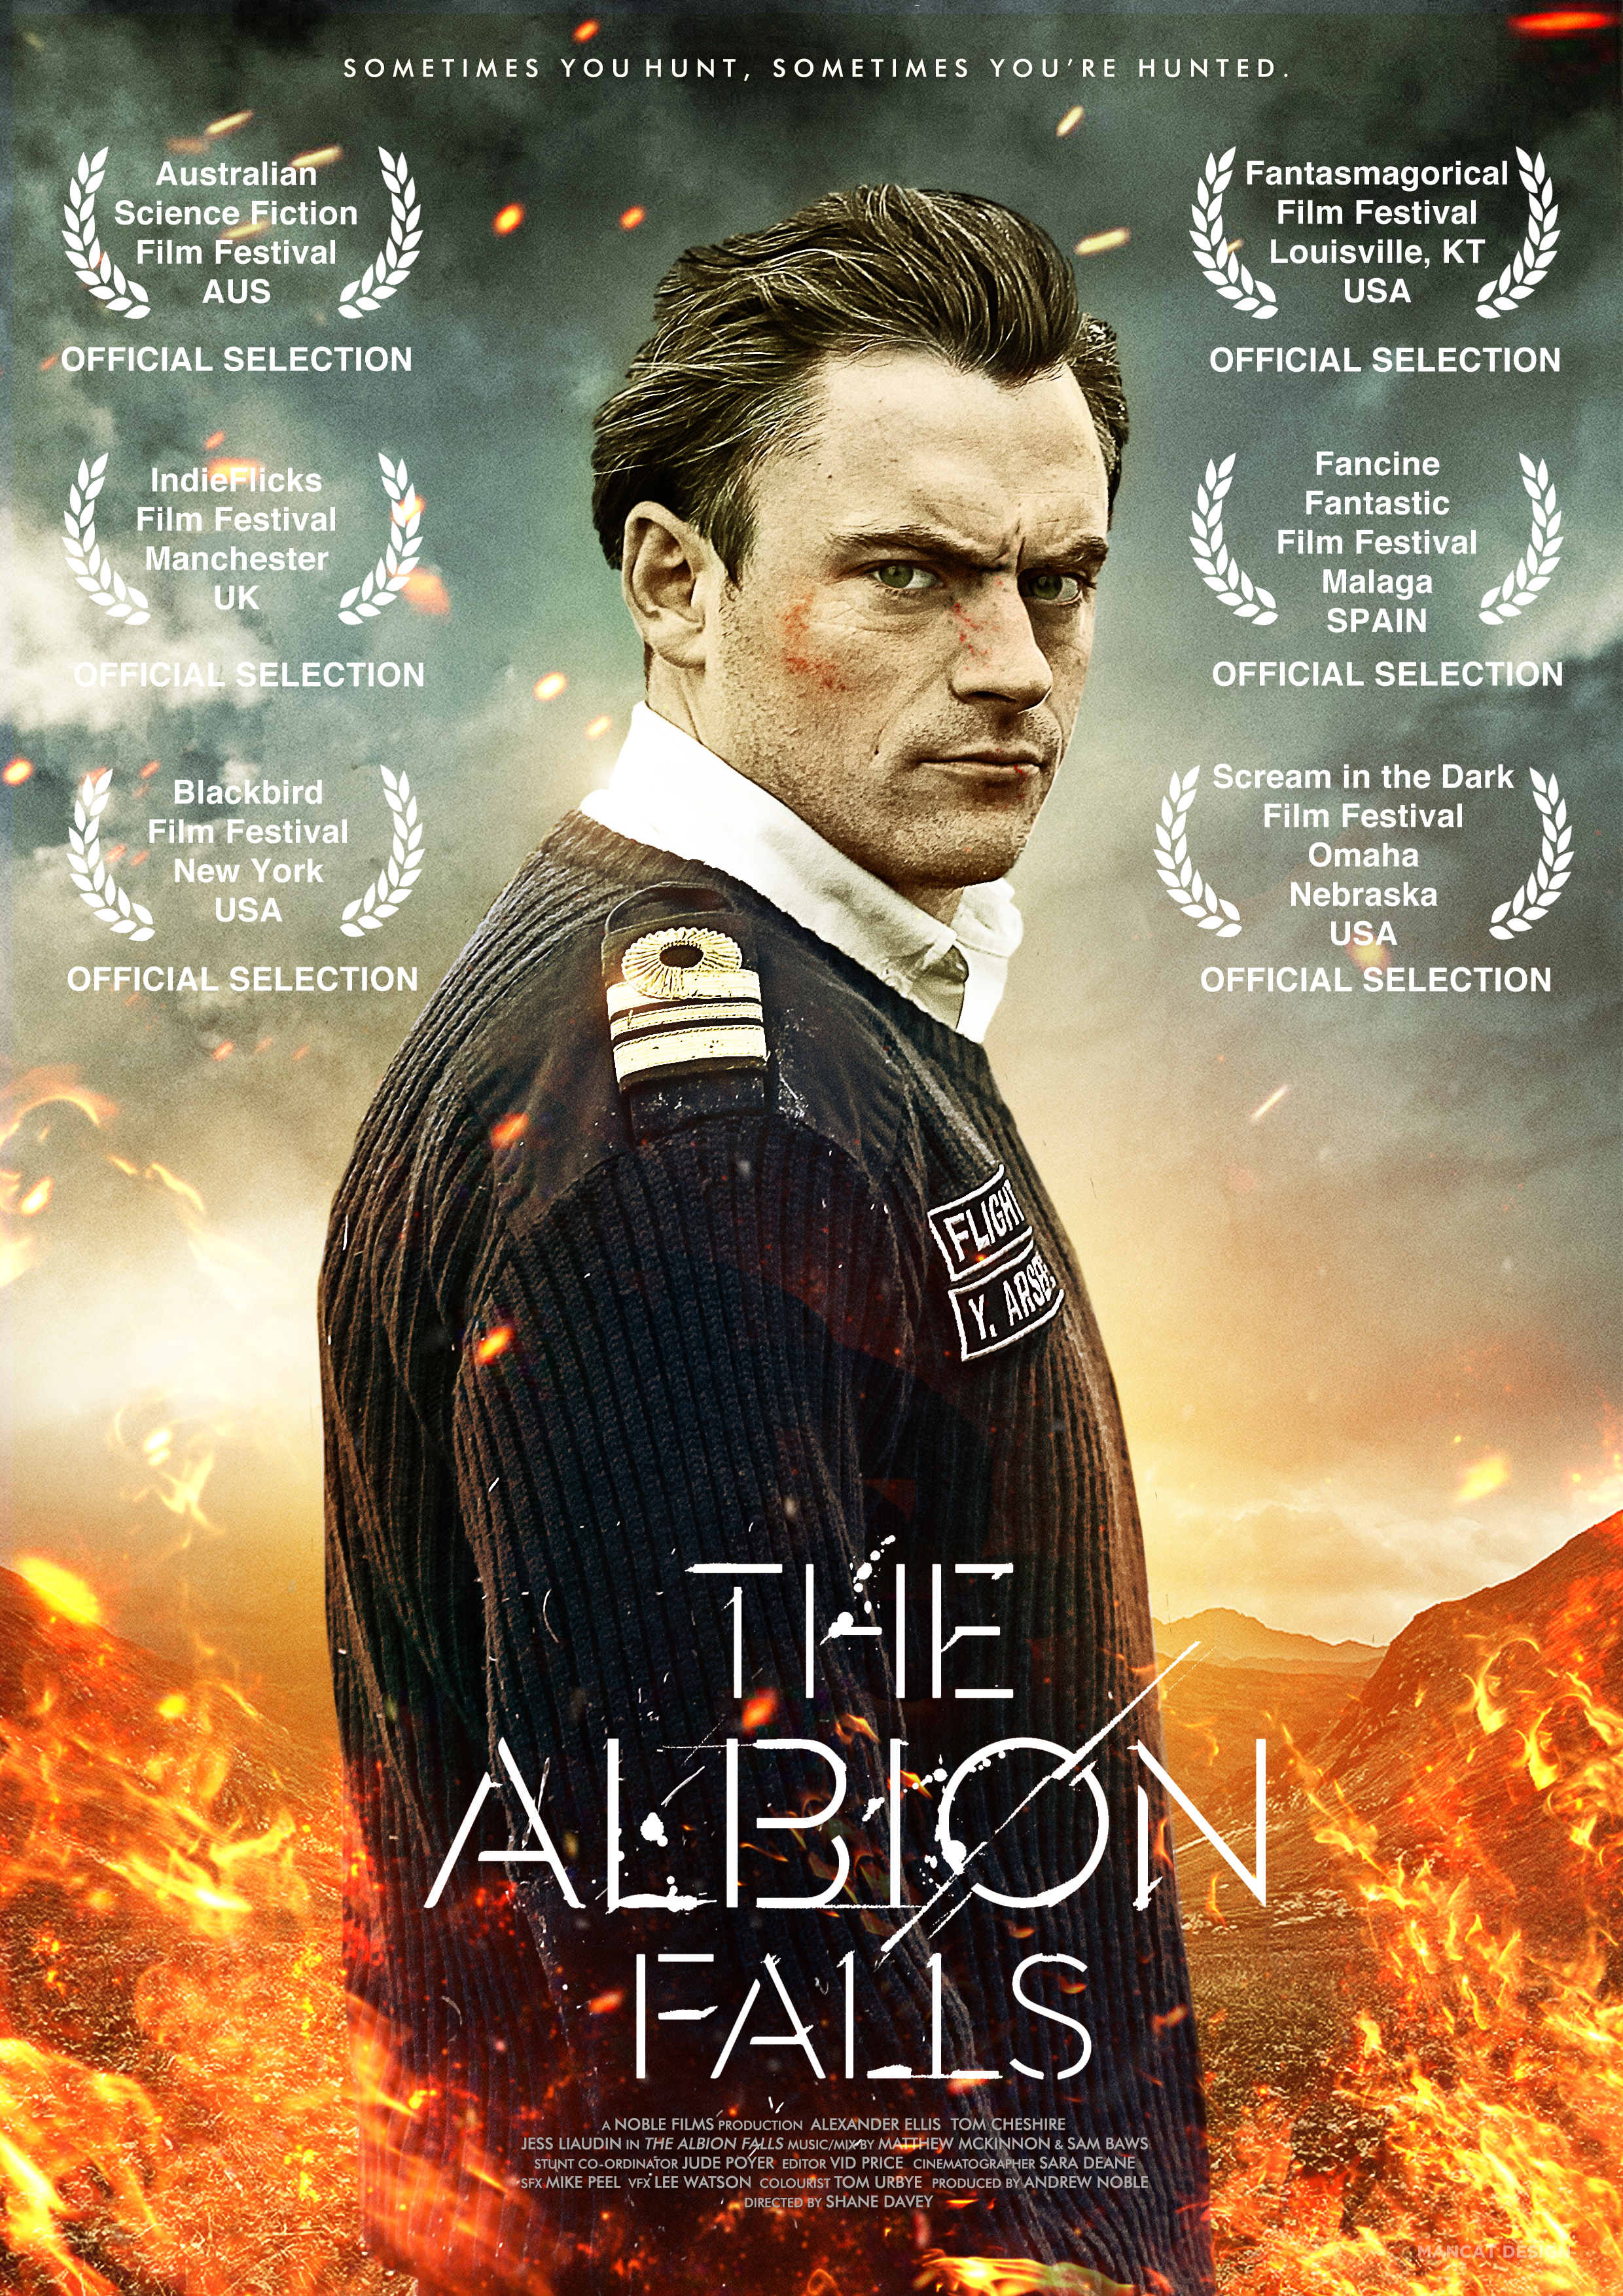 The Albion Falls (2014) Dir: Shane Davey